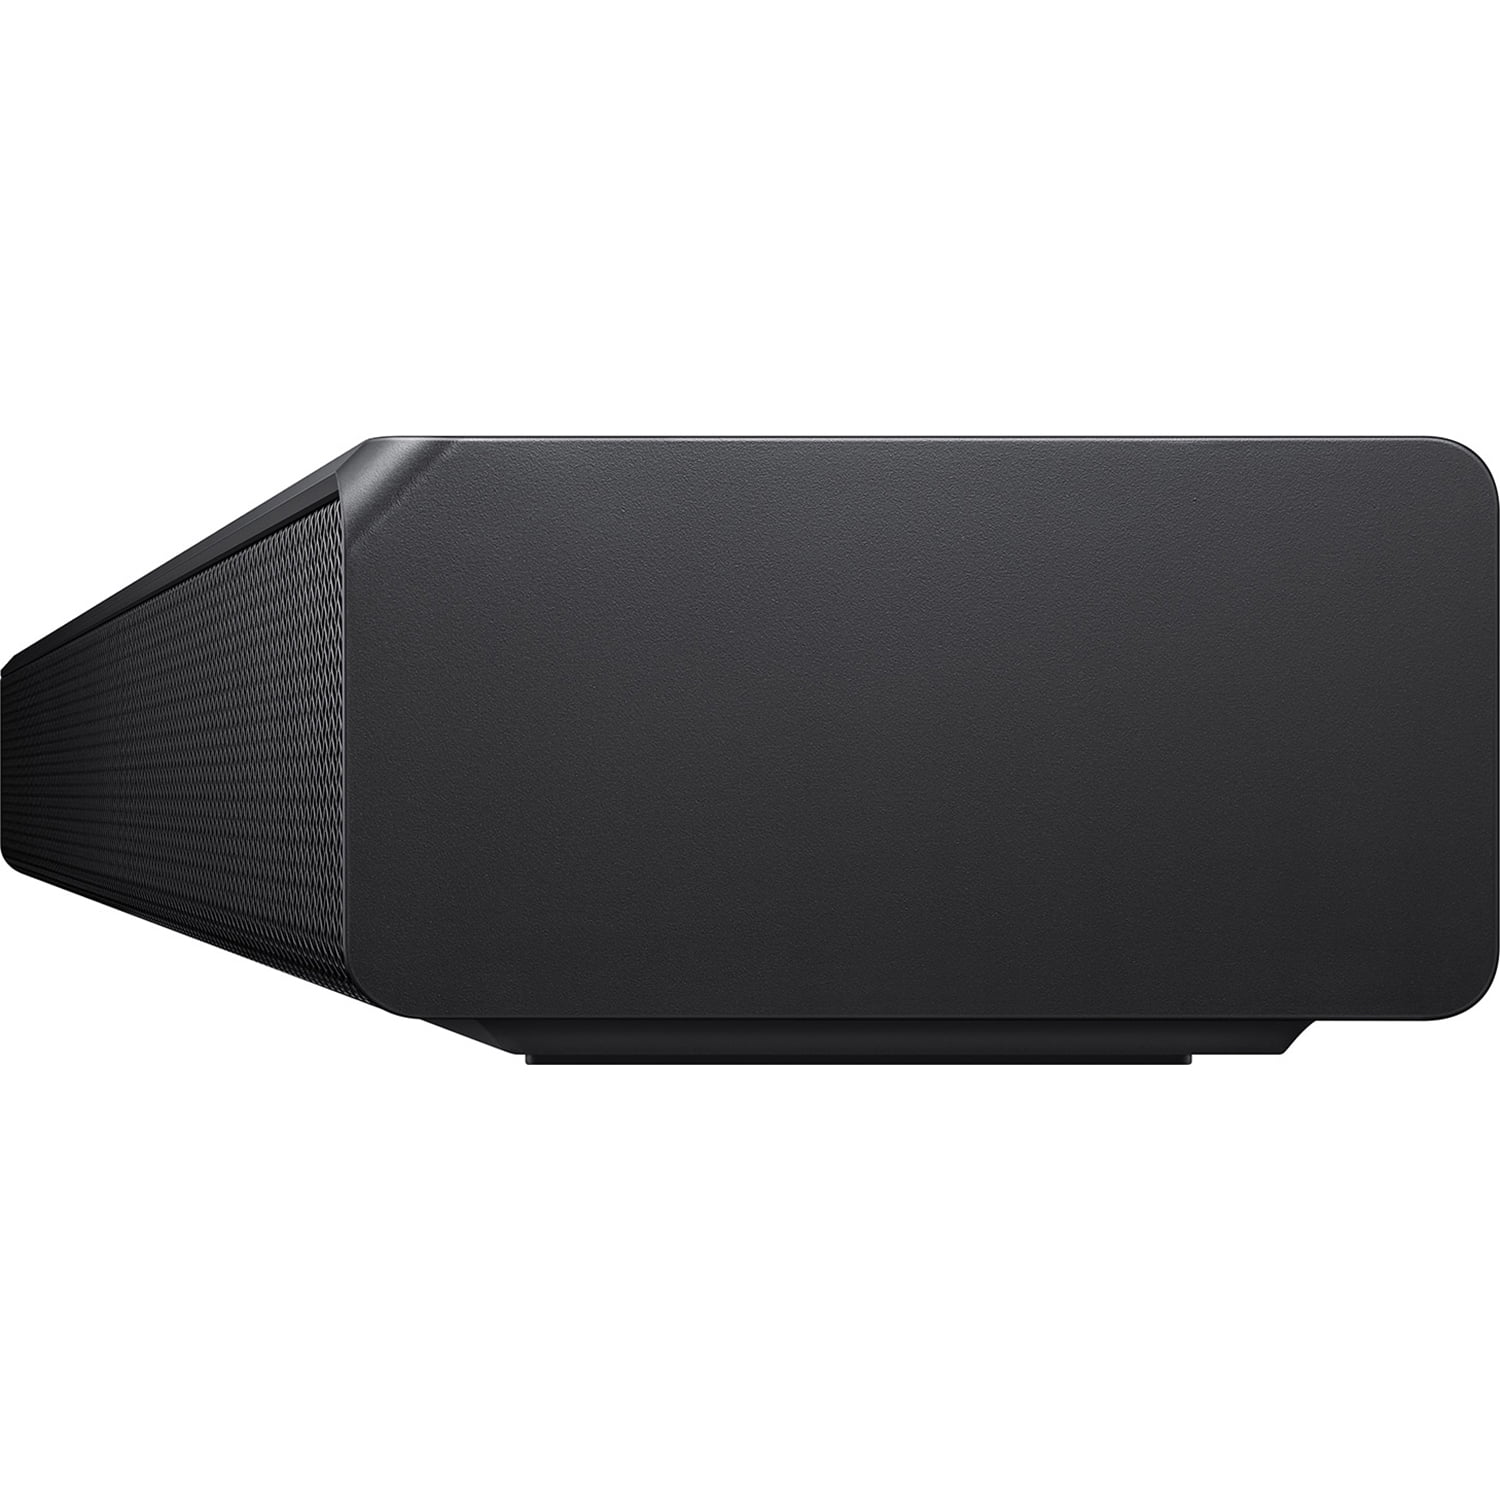 Soundbar Samsung |HW-Q600A 3.1.2ch w/Dolby Atmos/DTS:X 2021 Renewed 